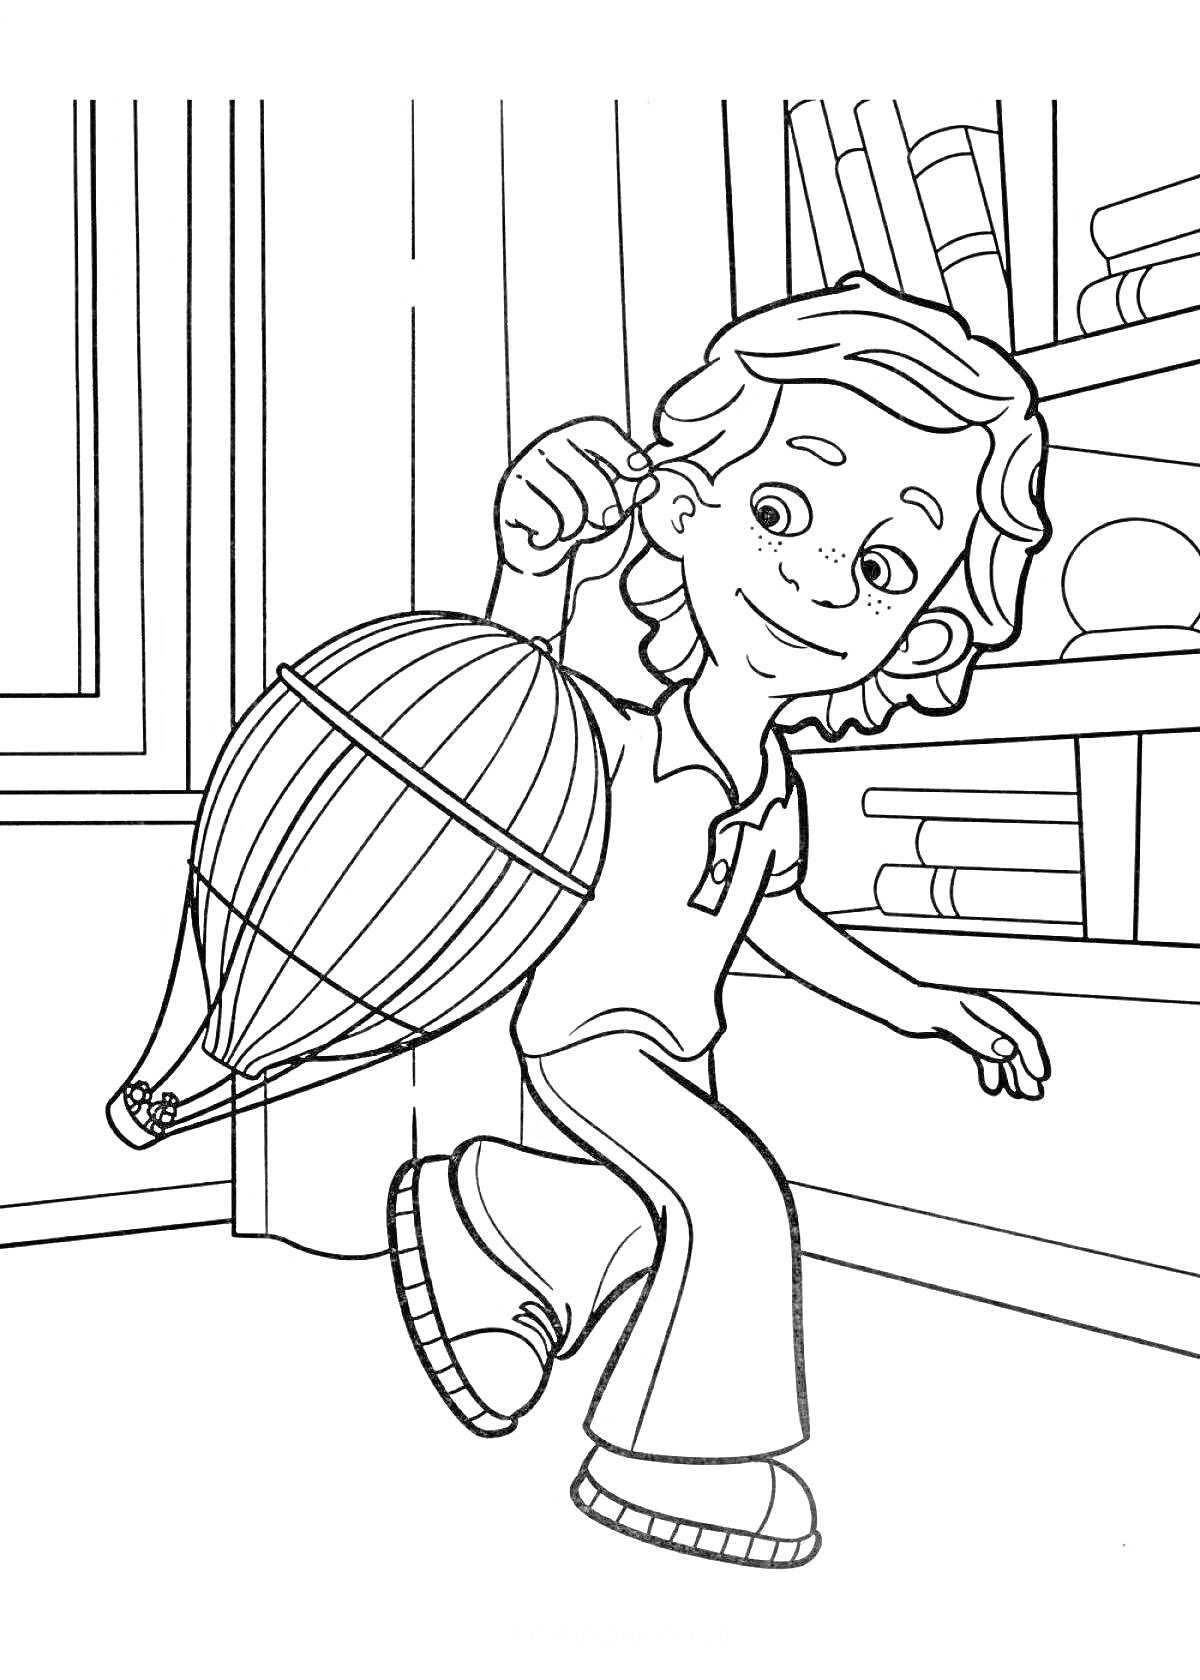 Раскраска Мальчик с воздушным шариком в помещении рядом с книжными полками